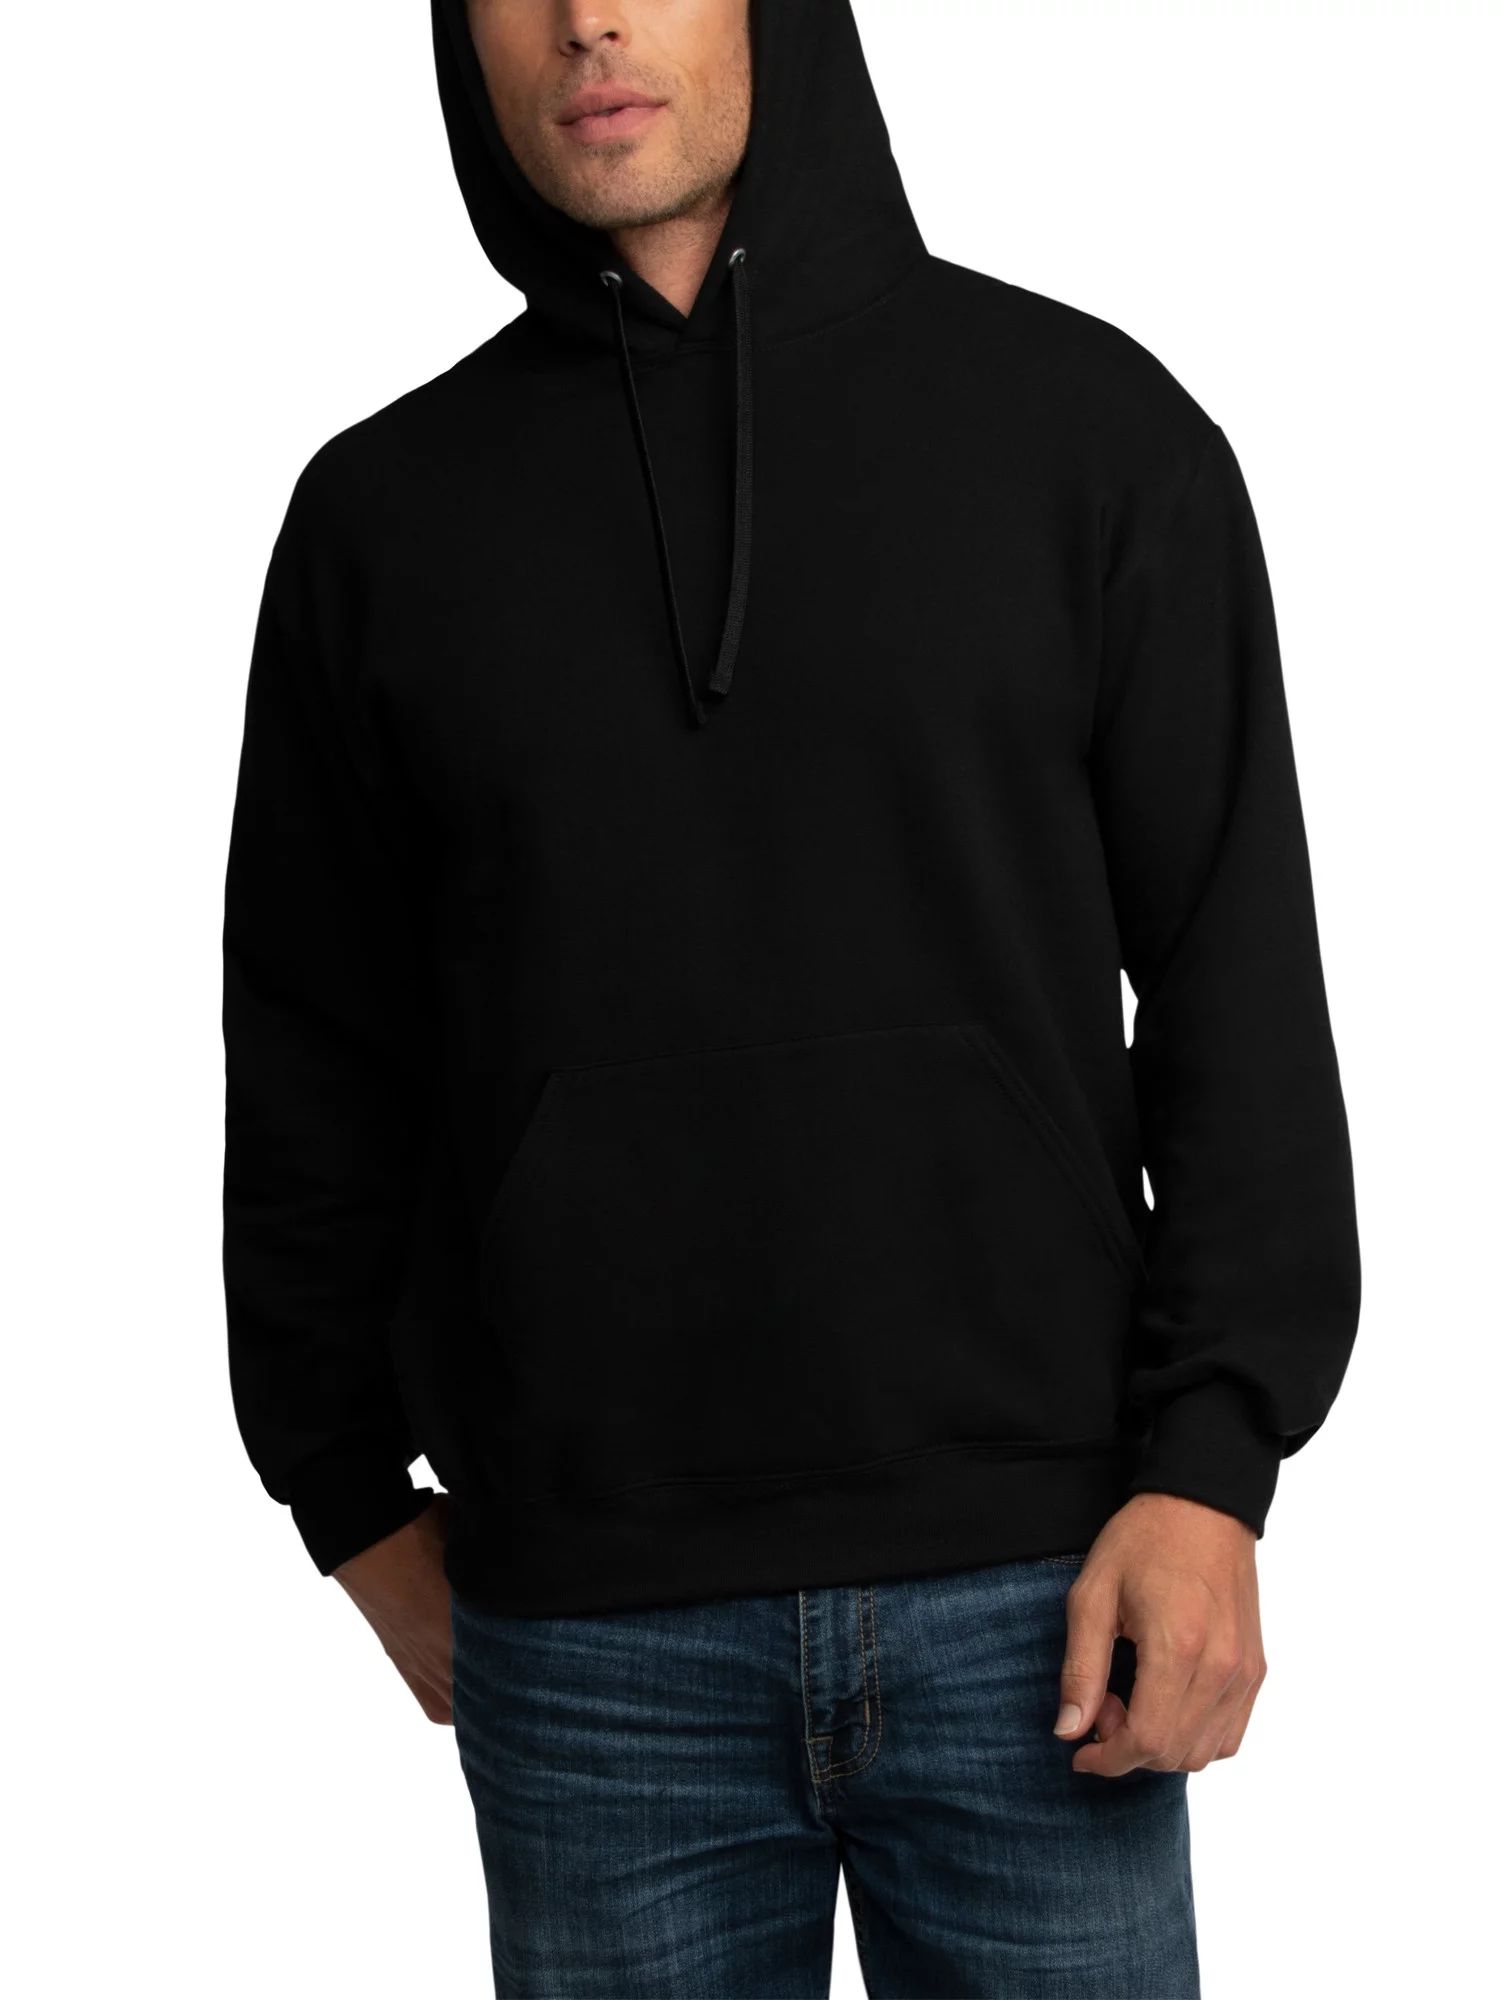 Fruit of the Loom Men's EverSoft Fleece Pullover Hoodie Sweatshirt, Up to Size 3XL | Walmart (US)